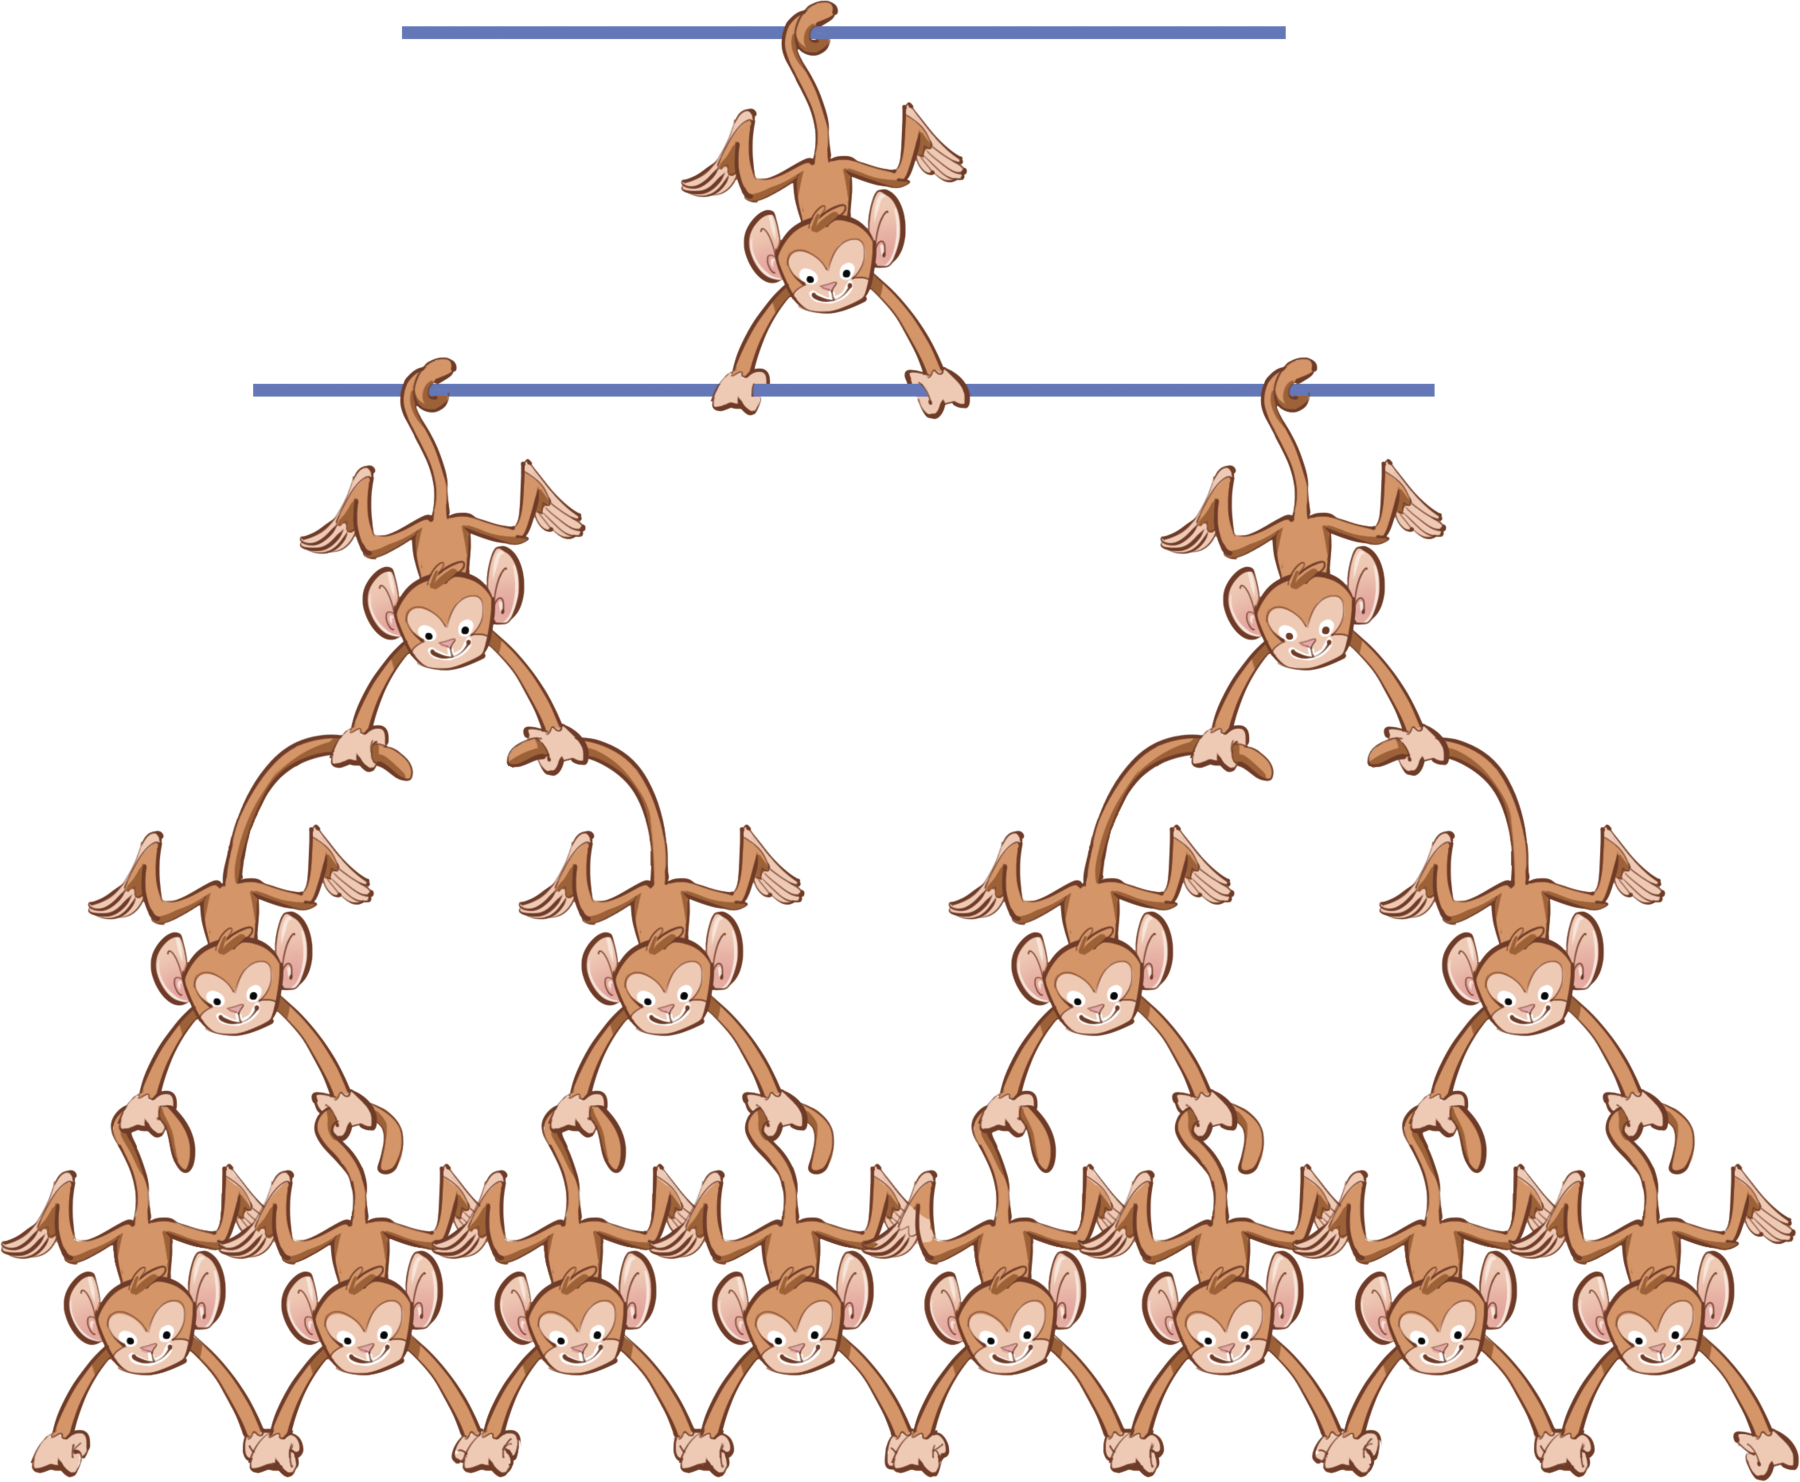 Ilustração. Pilha com macacos. De baixo para cima: fileira com 6 macacos. Acima, quatro macacos. Acima, dois macacos segurando uma barra pela cauda. Acima, um macaco segura uma barra com as mãos e a outra com a cauda.